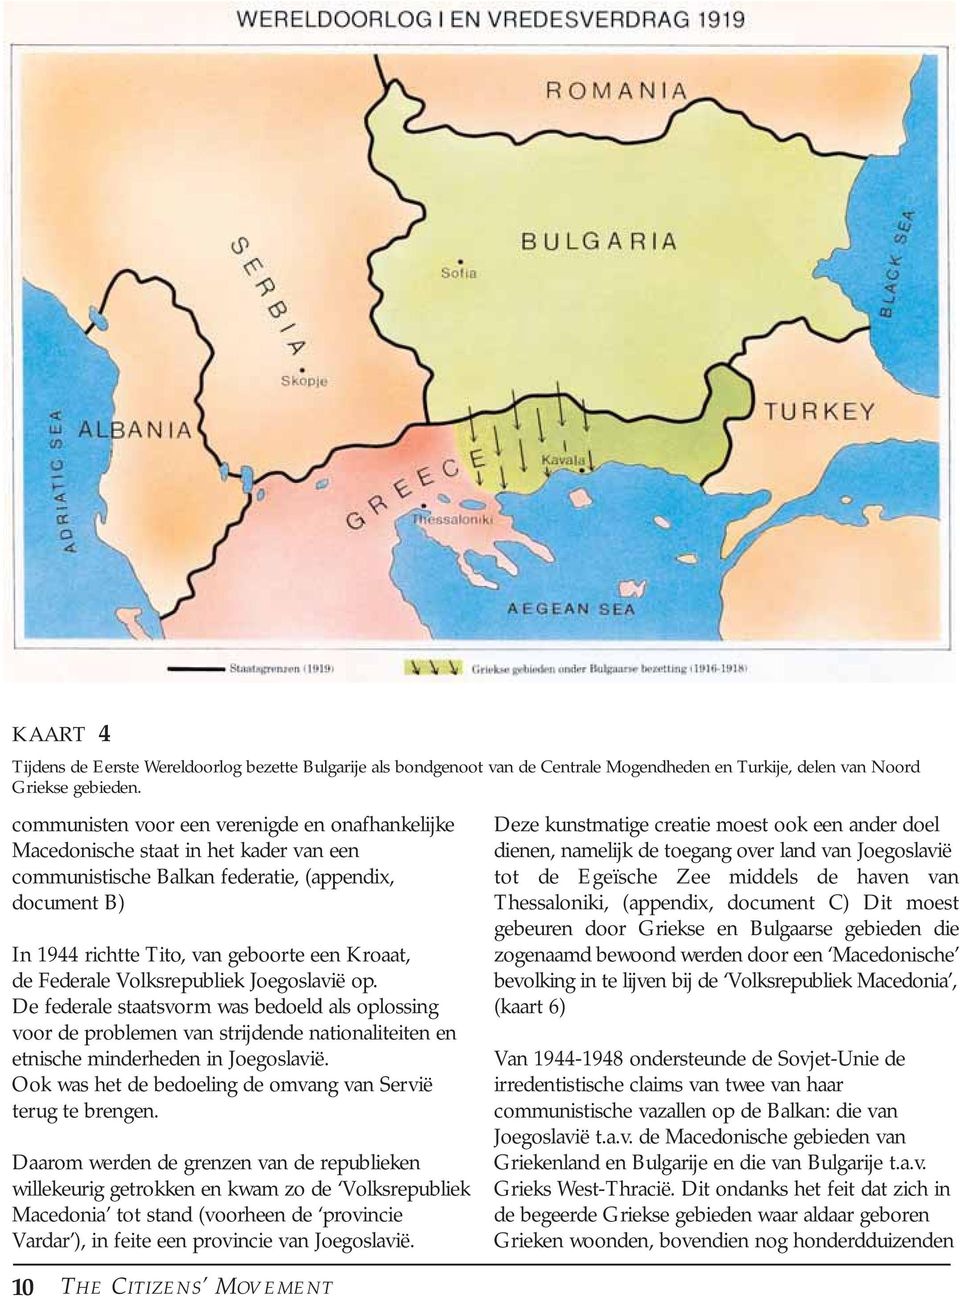 Federale Volksrepubliek Joegoslavië op. De federale staatsvorm was bedoeld als oplossing voor de problemen van strijdende nationaliteiten en etnische minderheden in Joegoslavië.